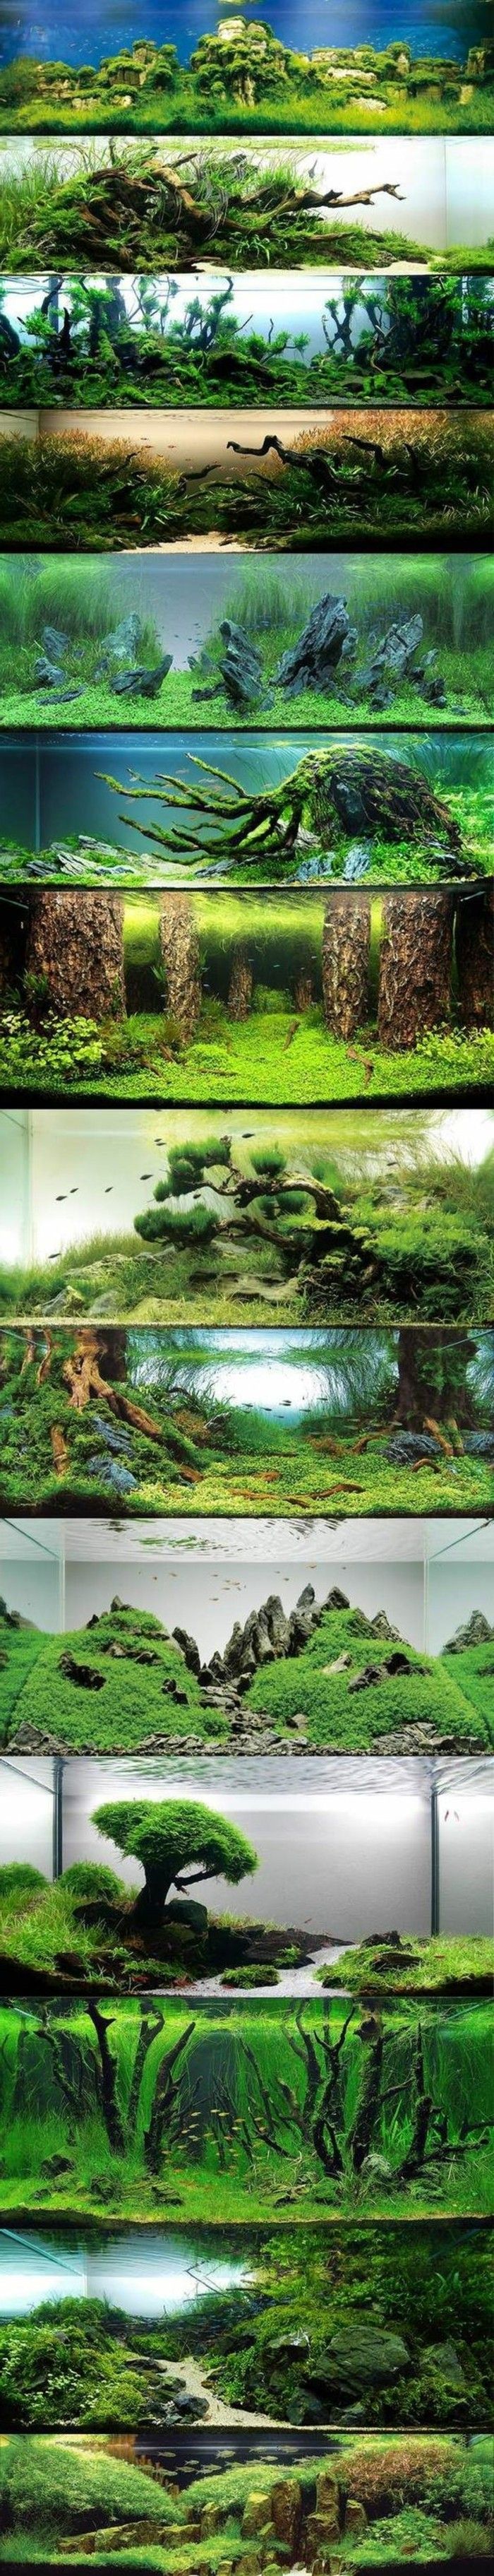 akwarium-design-best-idee-photo collage-the-world-with-wodnych wodorostów